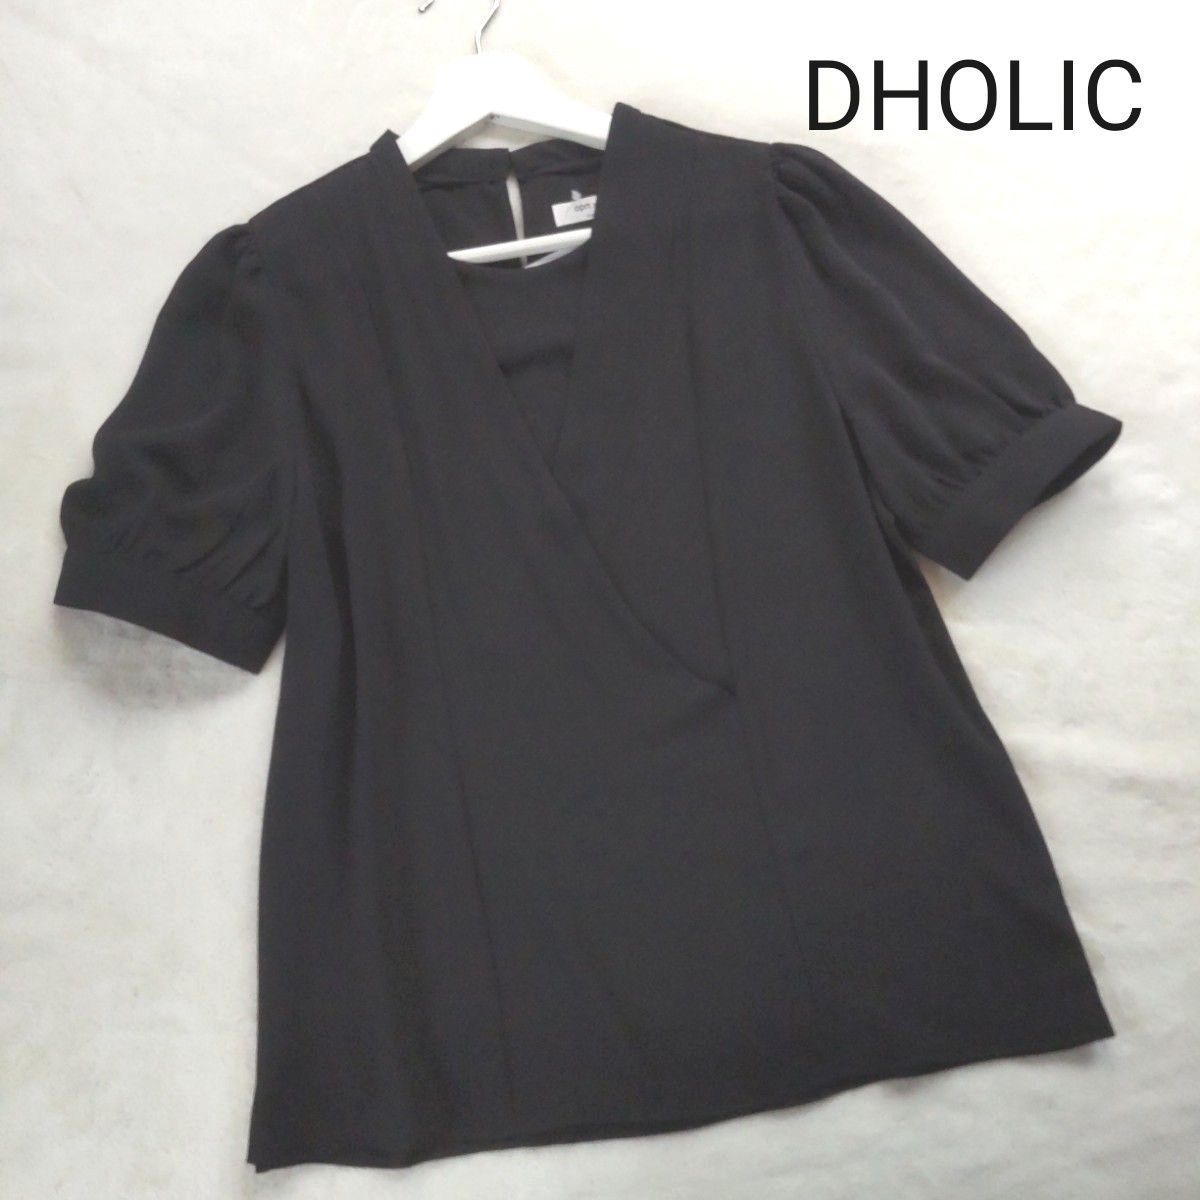 【新品未使用】DHOLIC ディーホリック ドレープジョーゼットブラウス♪ブラック 黒 ワンサイズ フリーサイズ相当